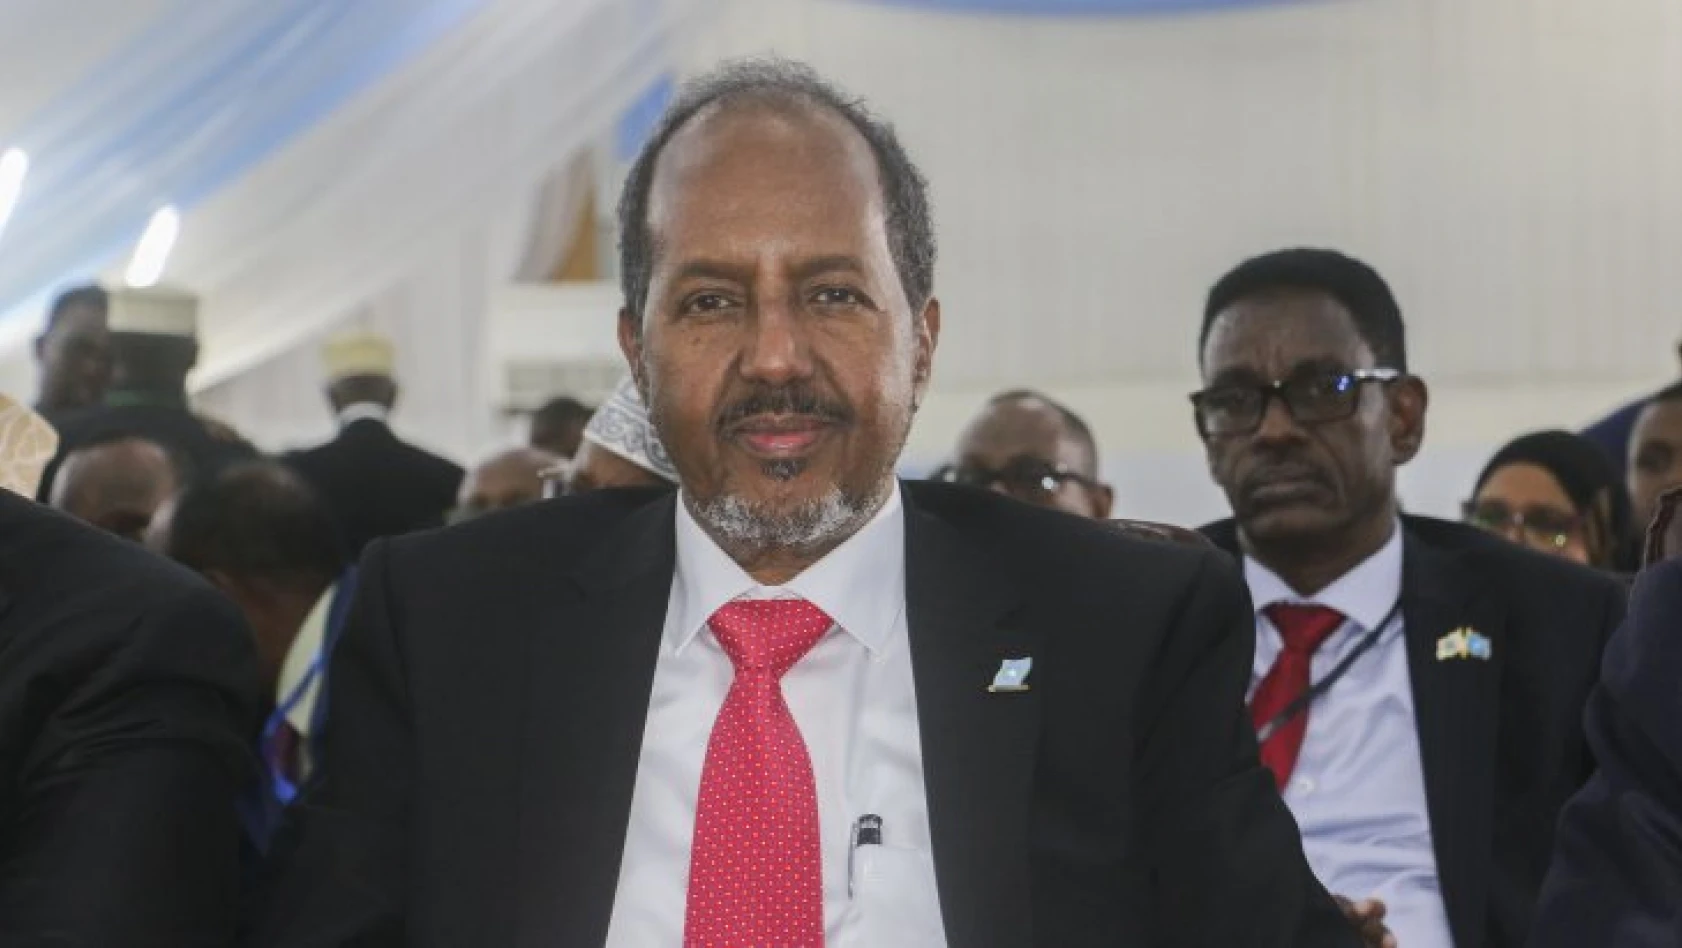    Somali'nin eski Cumhurbaşkanı Hasan Şeyh Mahmud 214 oyla yeniden cumhurbaşkanı seçildi   